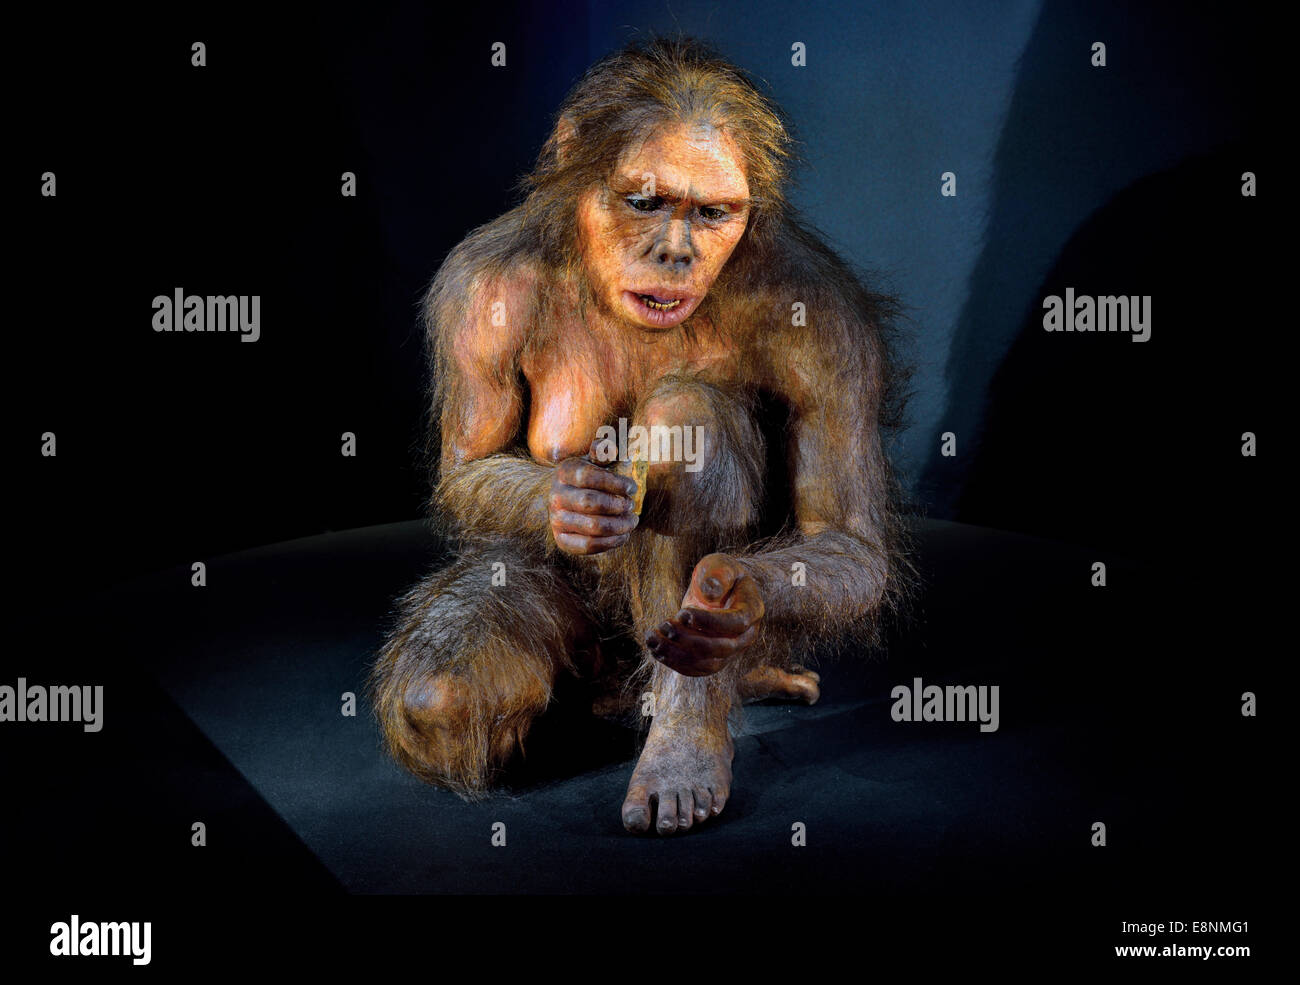 España, Burgos: Homínido 'Lucy (Australopithecus afarensis) en el Museo de la evolución humana. Foto de stock